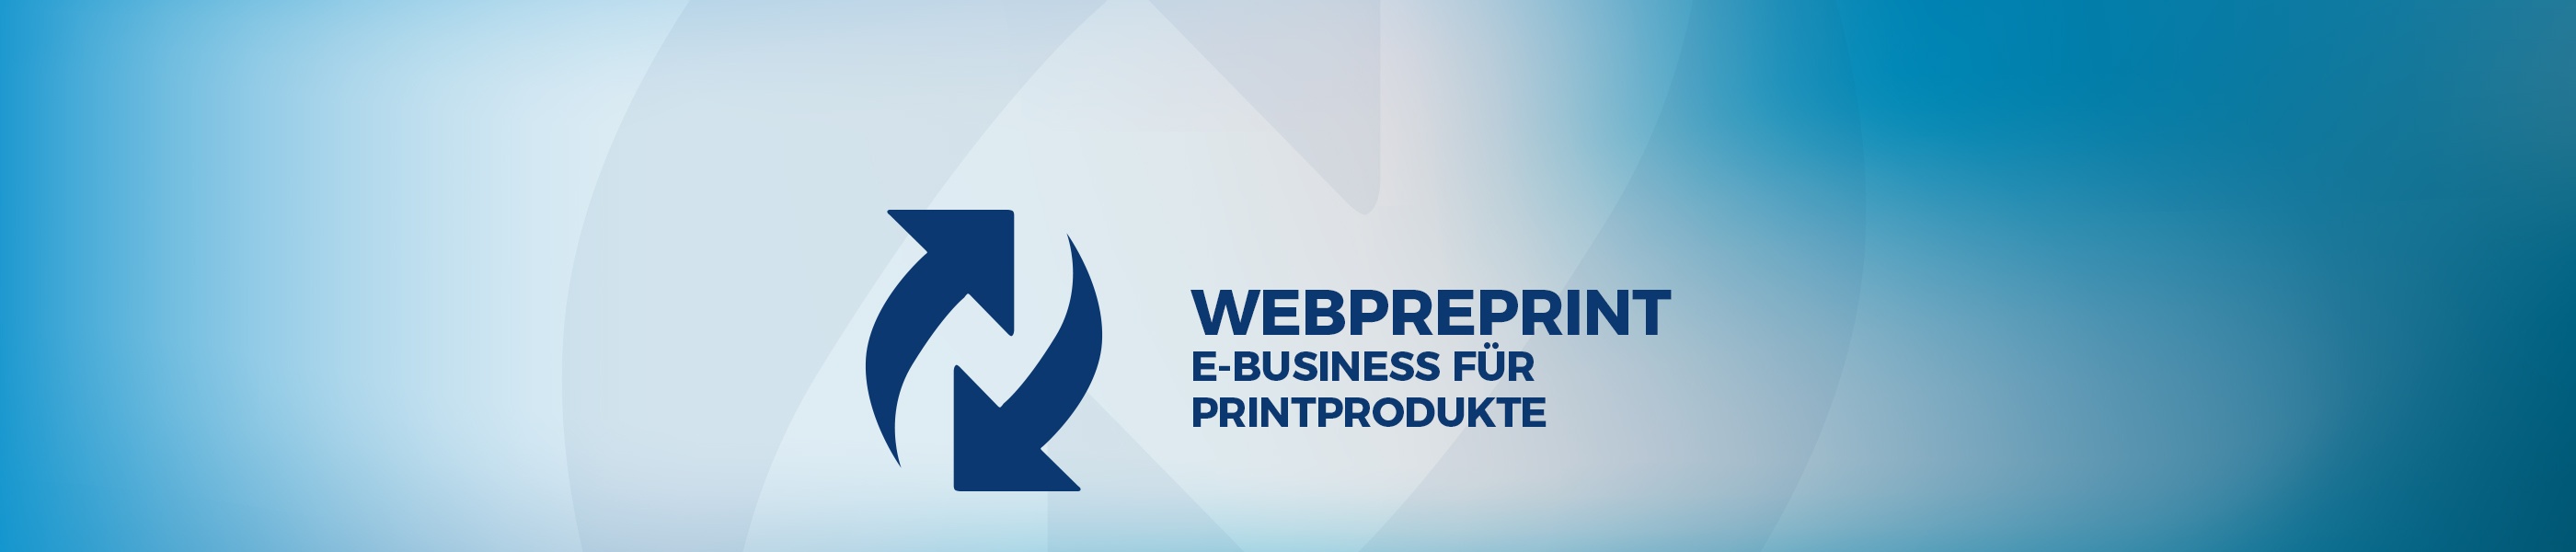 180108_Produkte_webpreprint_DE.jpg